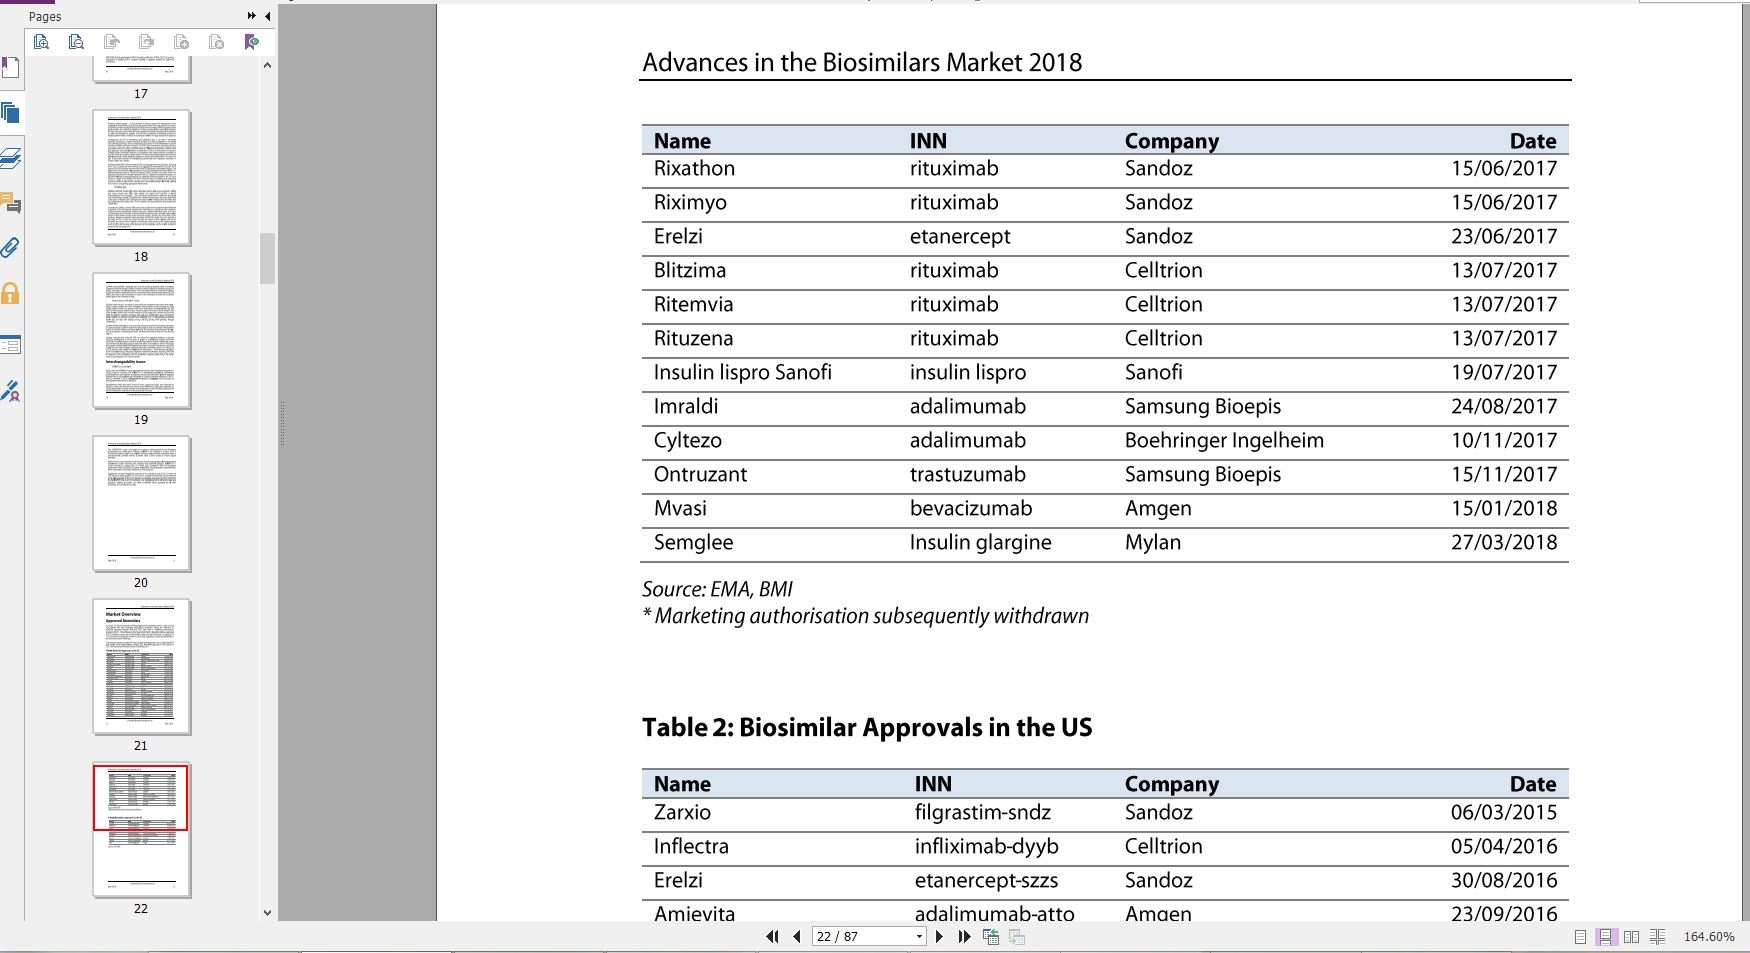 دانلود ریپورت Advances in the Biosimilars Market از بیزینس مانیتور خرید گزارش پیشرفت در بازار Biosimilars خرید Report از Business Monitor دریافت گزارشات BMI گیگاپیپر